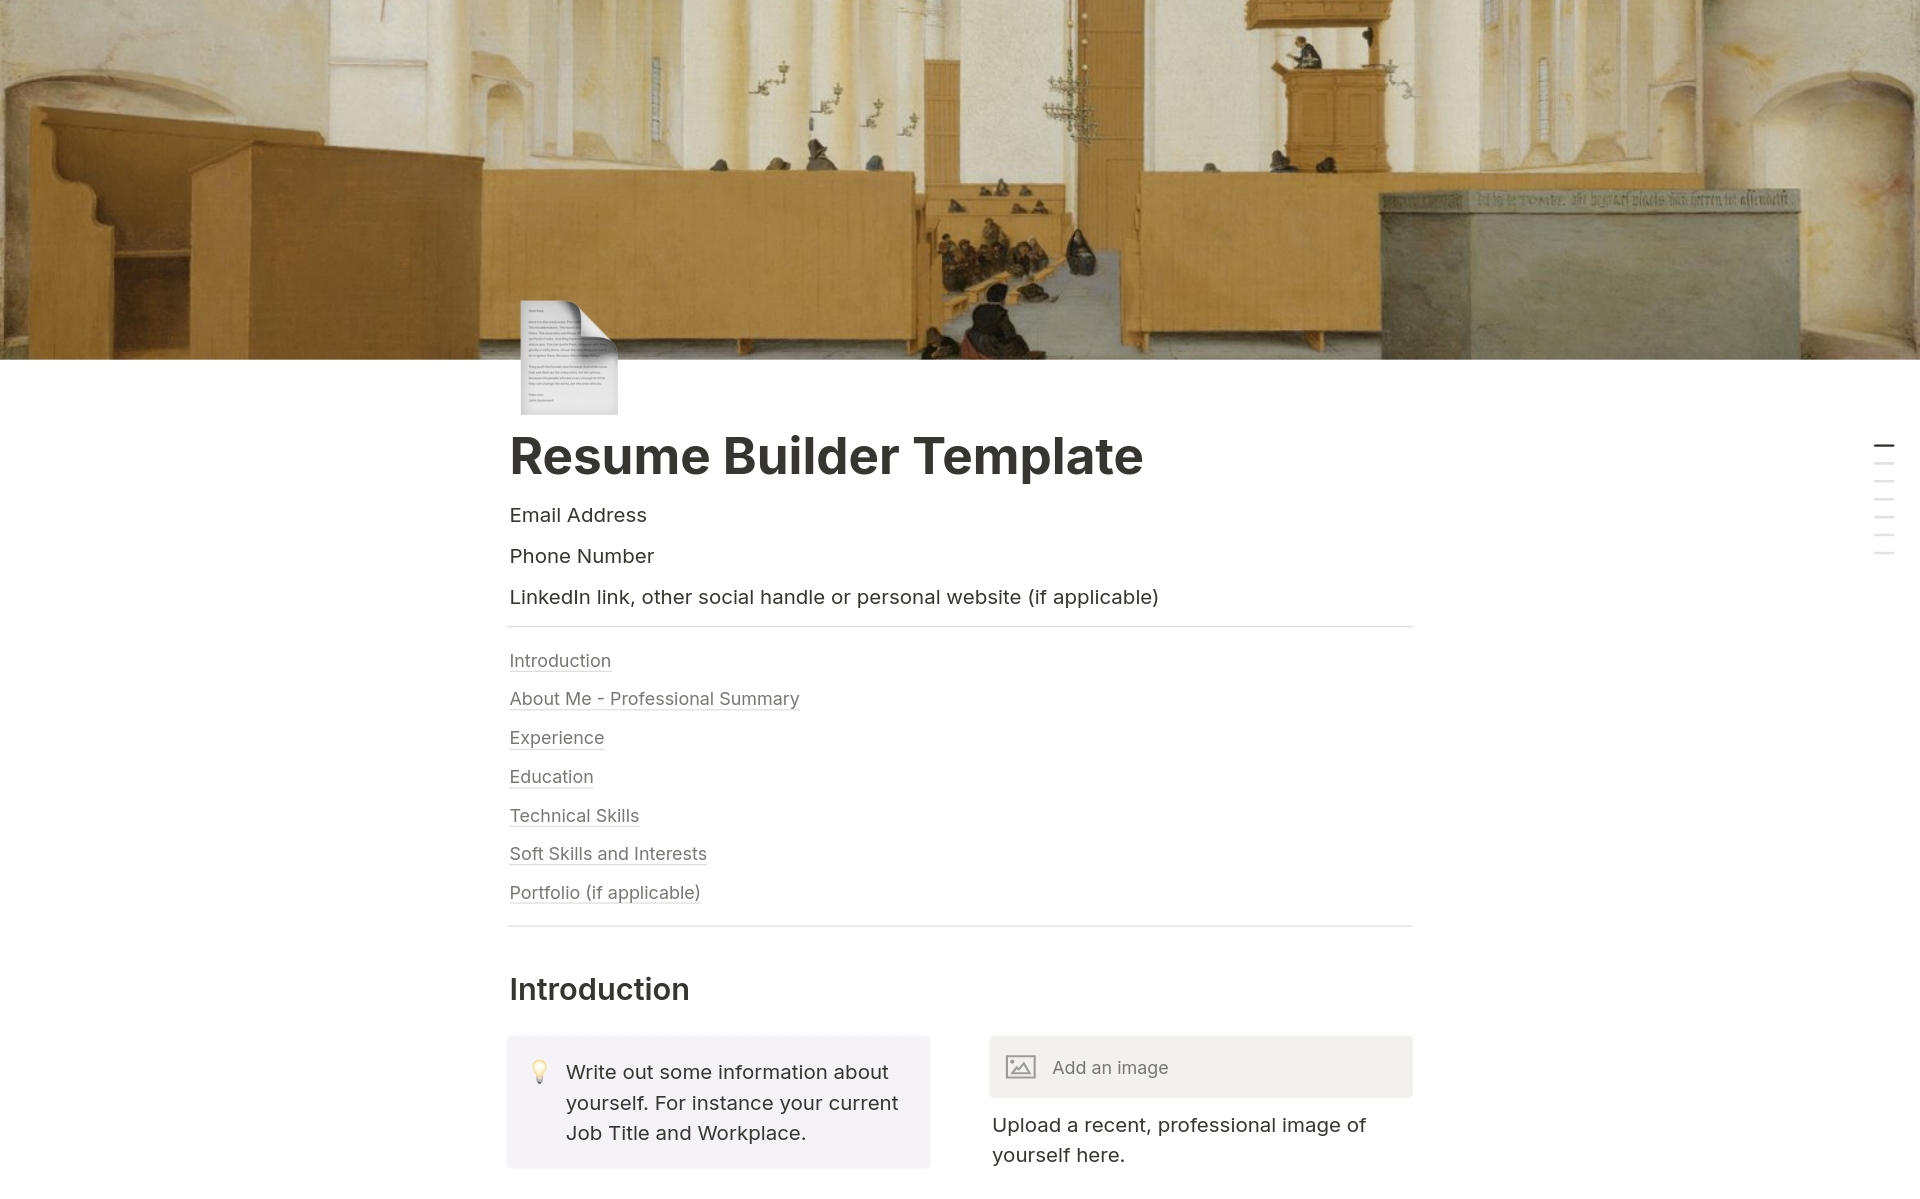 En förhandsgranskning av mallen för Resume Builder